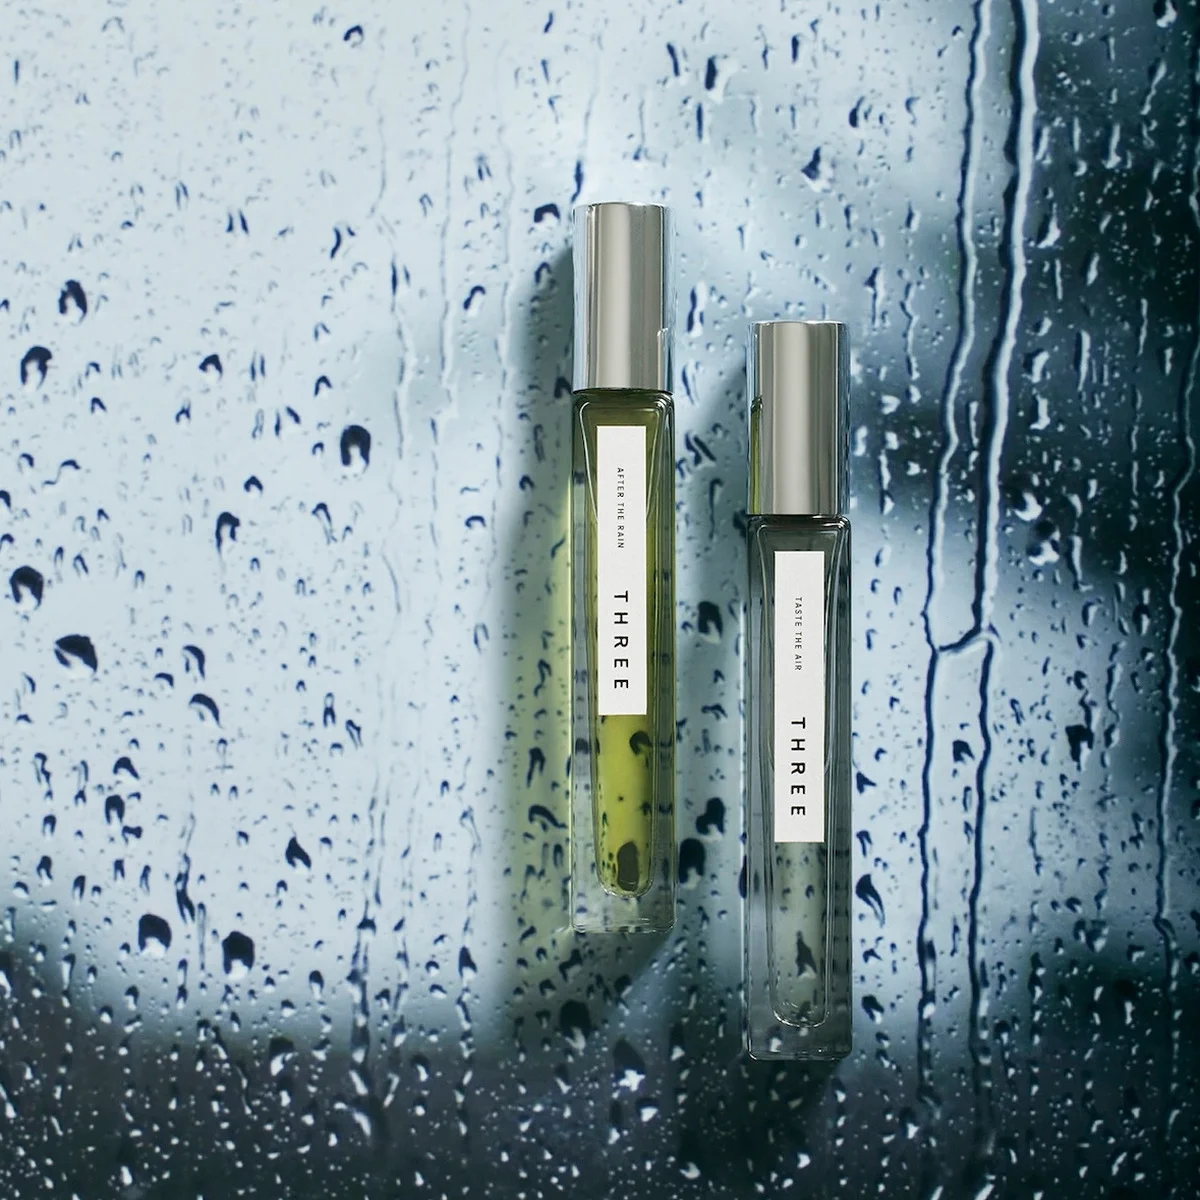 【THREE】「エッセンシャルセンツ」に新作。“雨”の季節のマインドセットに効く2つの香りが登場